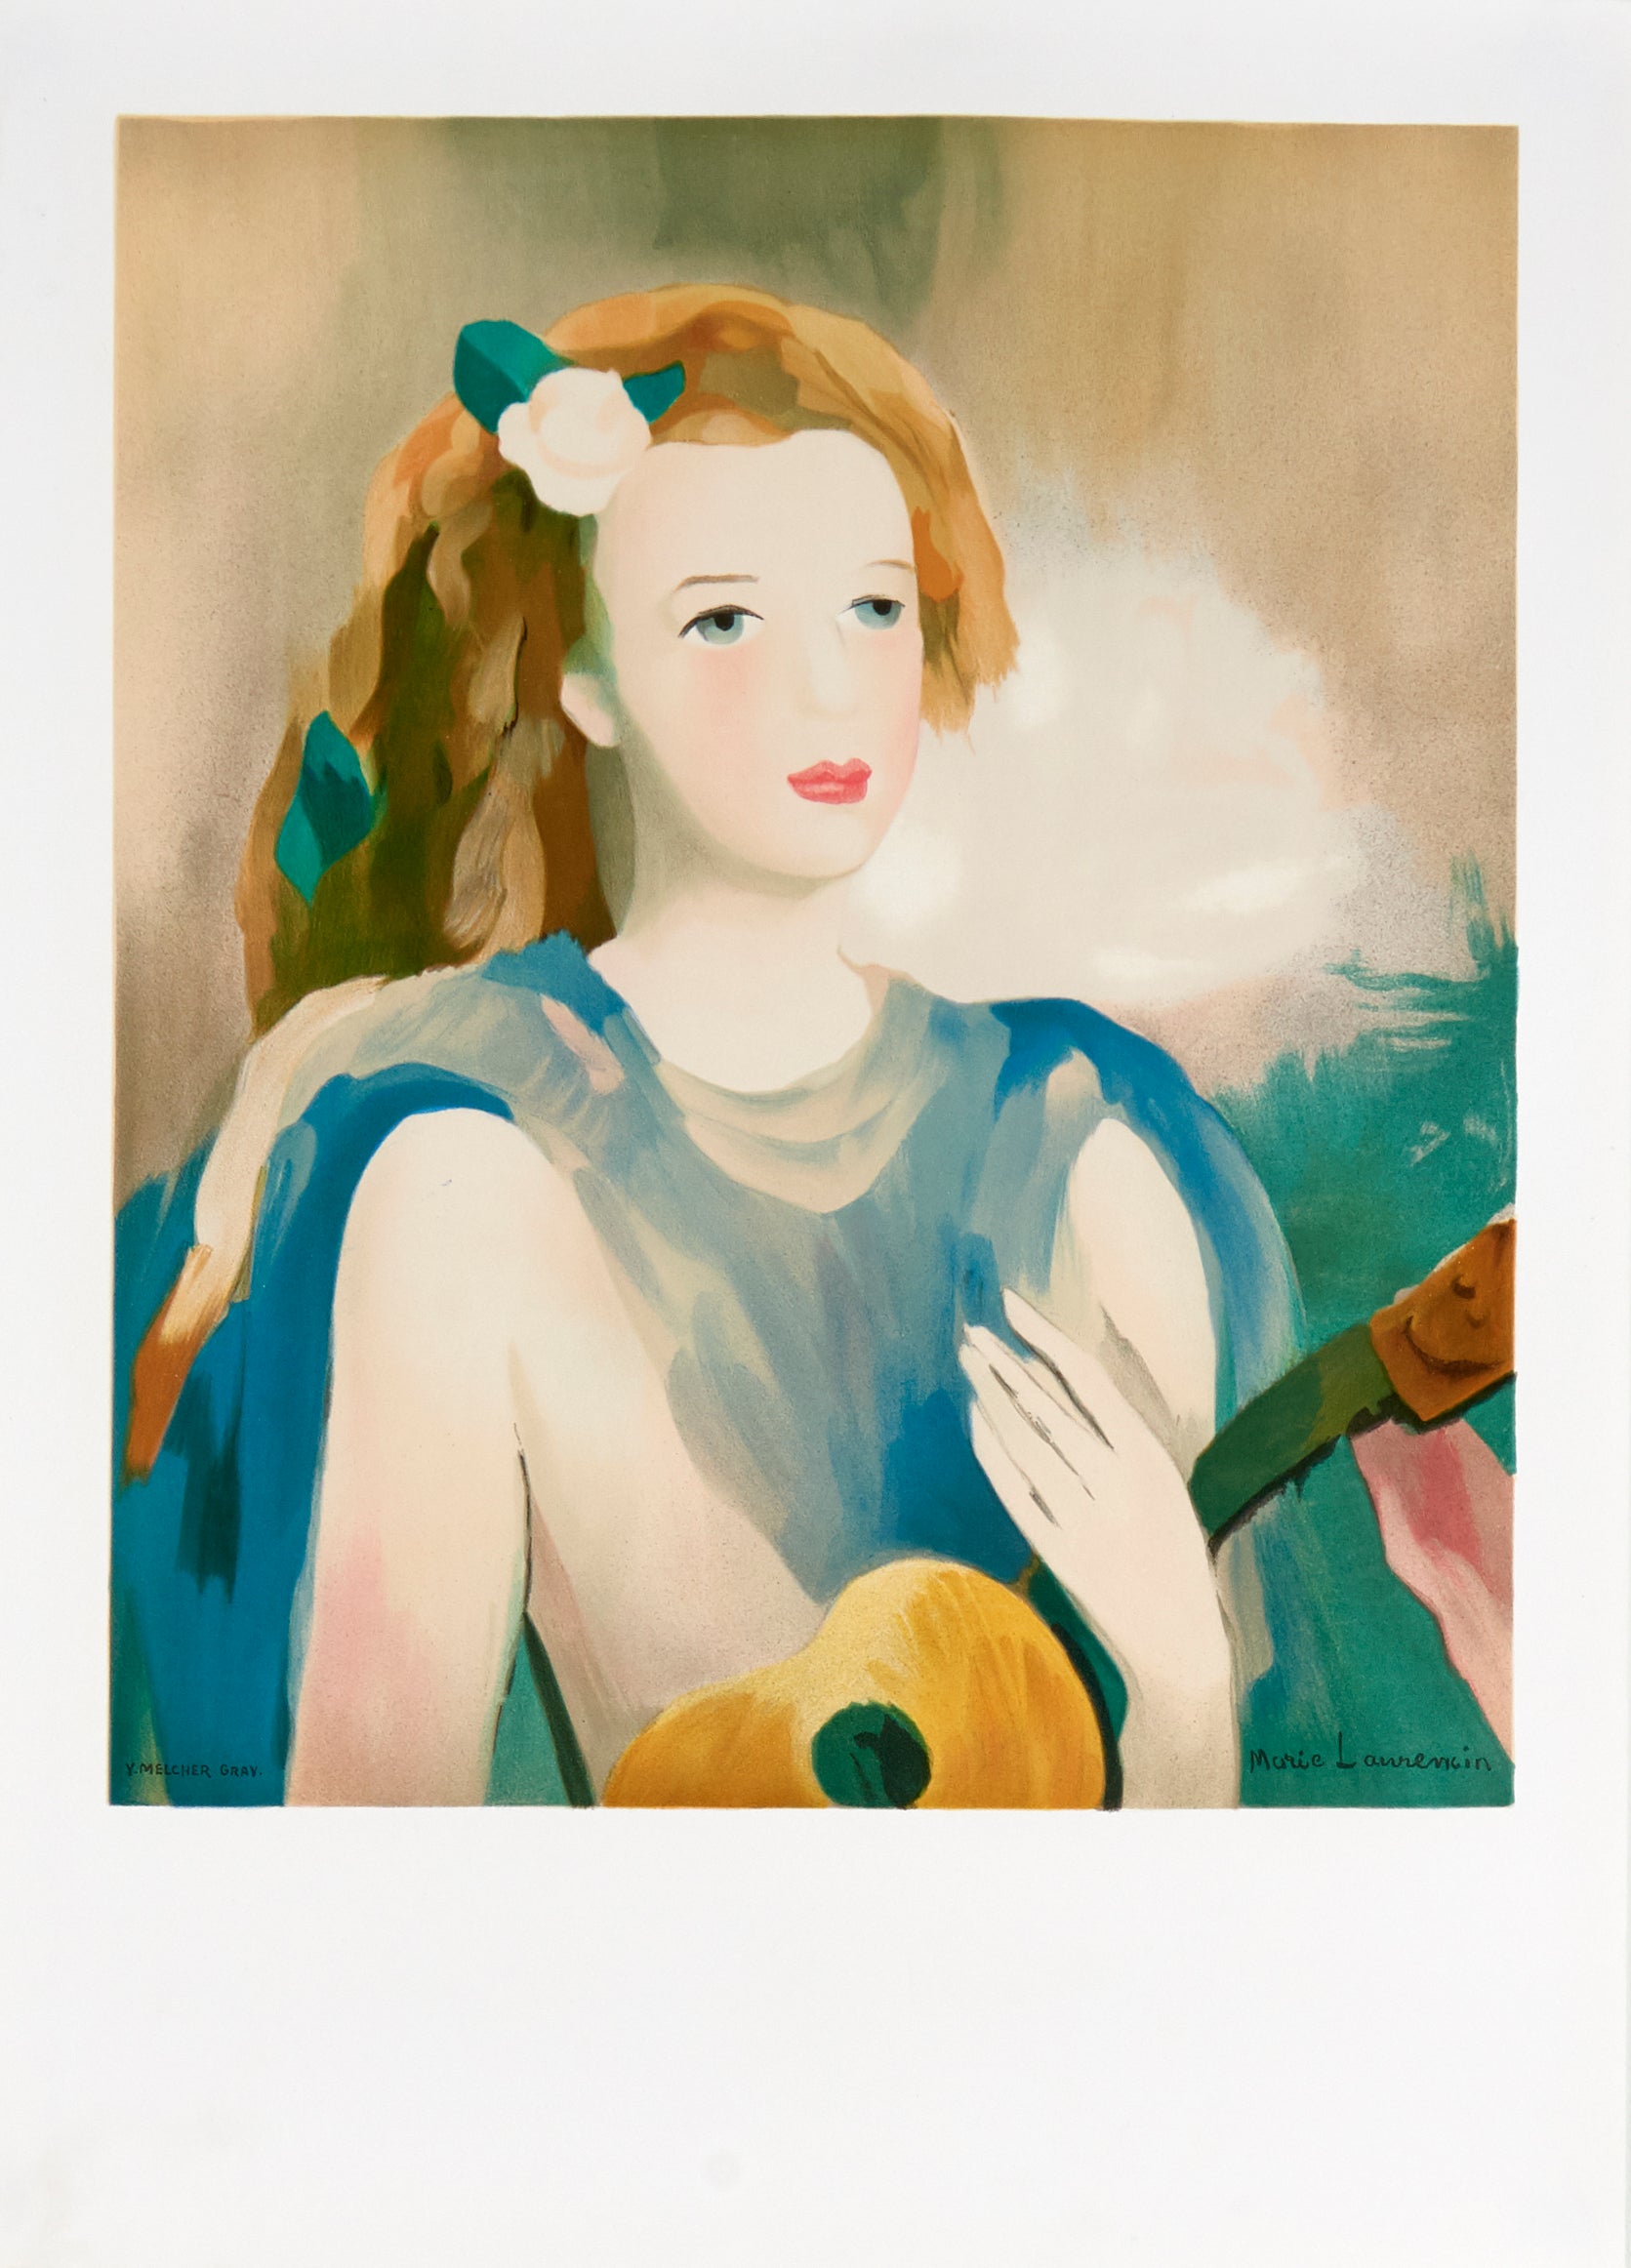 Jeune Fille a la guitar (after) Marie Laurencin, 1989 - Mourlot Editions - Fine_Art - Poster - Lithograph - Wall Art - Vintage - Prints - Original